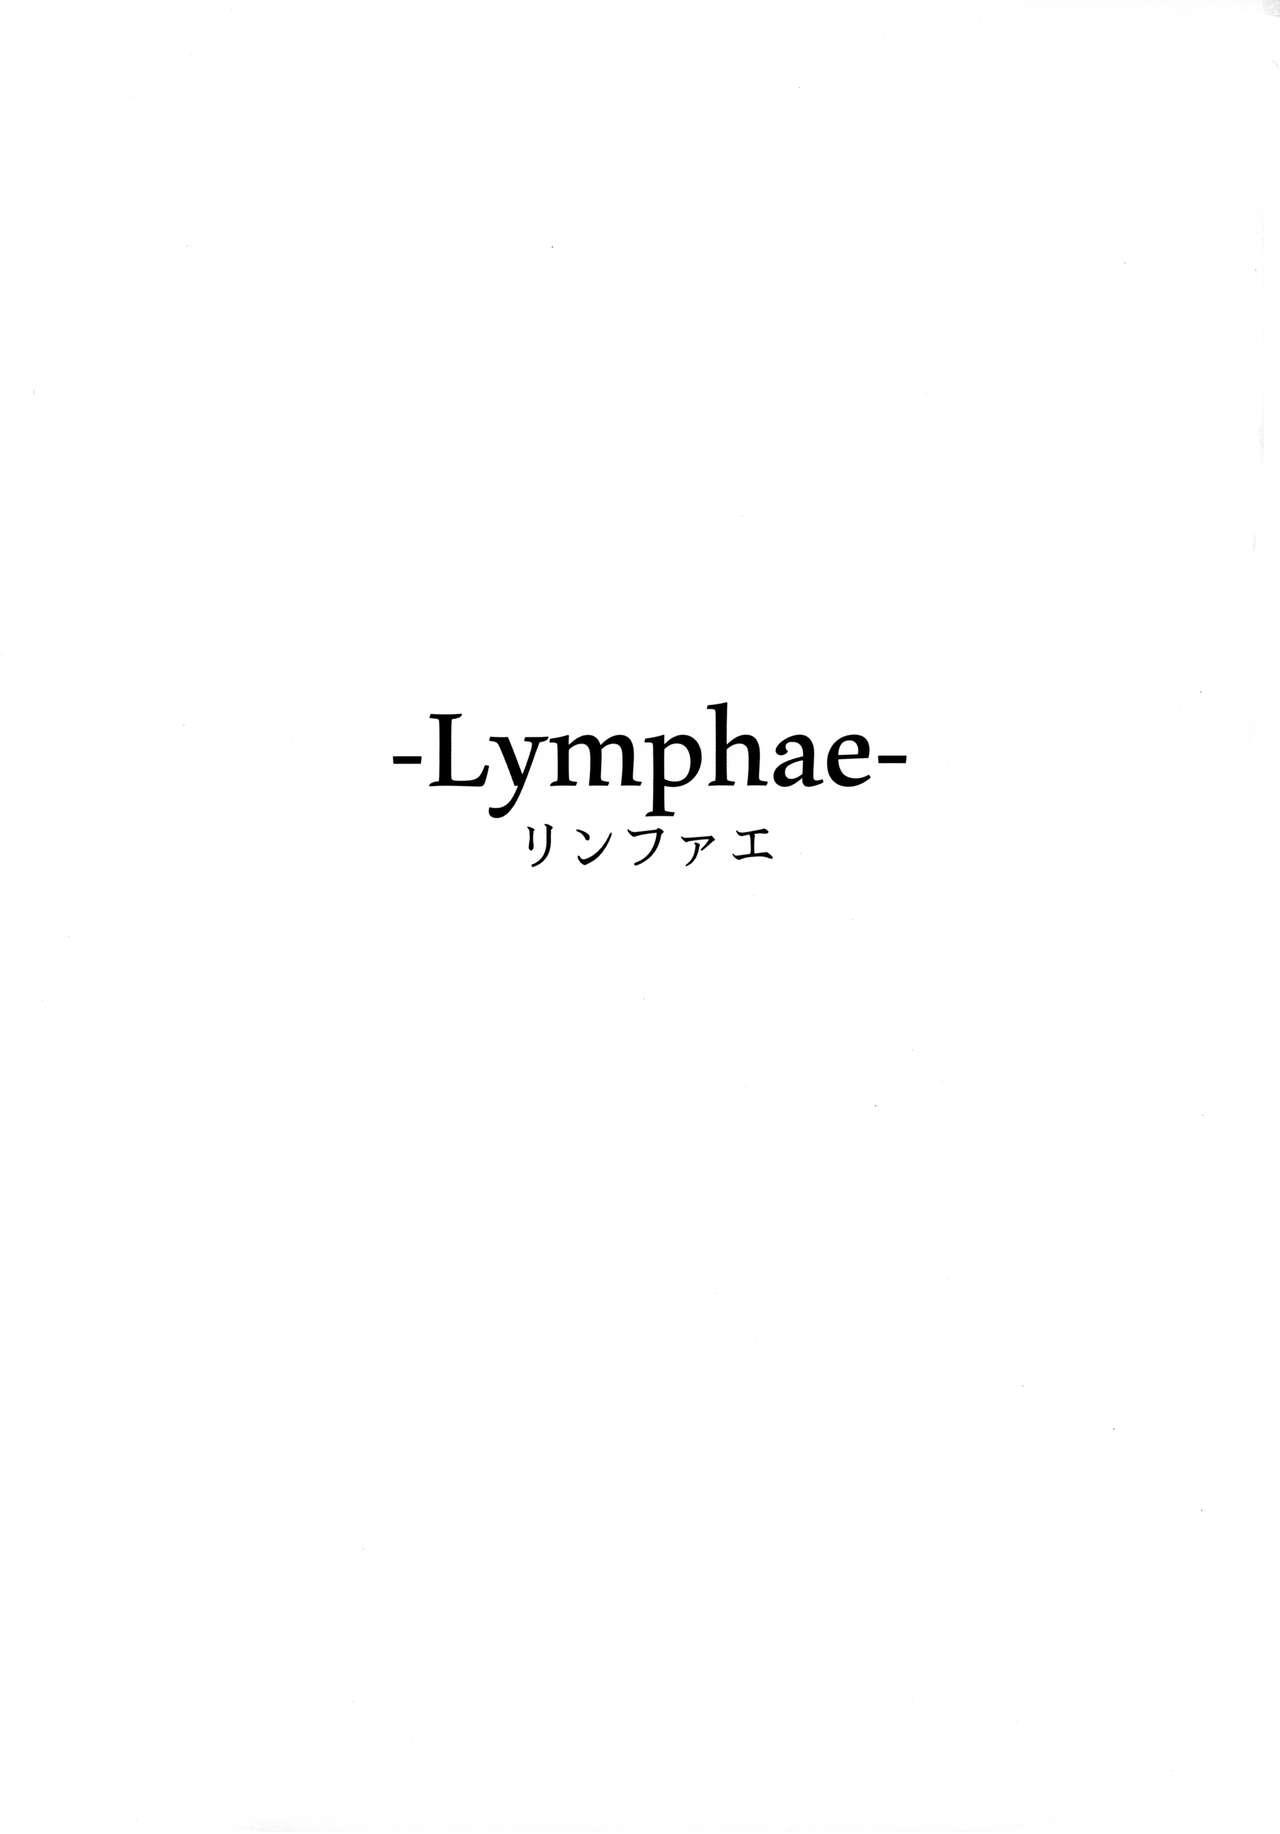 Lymphae 2